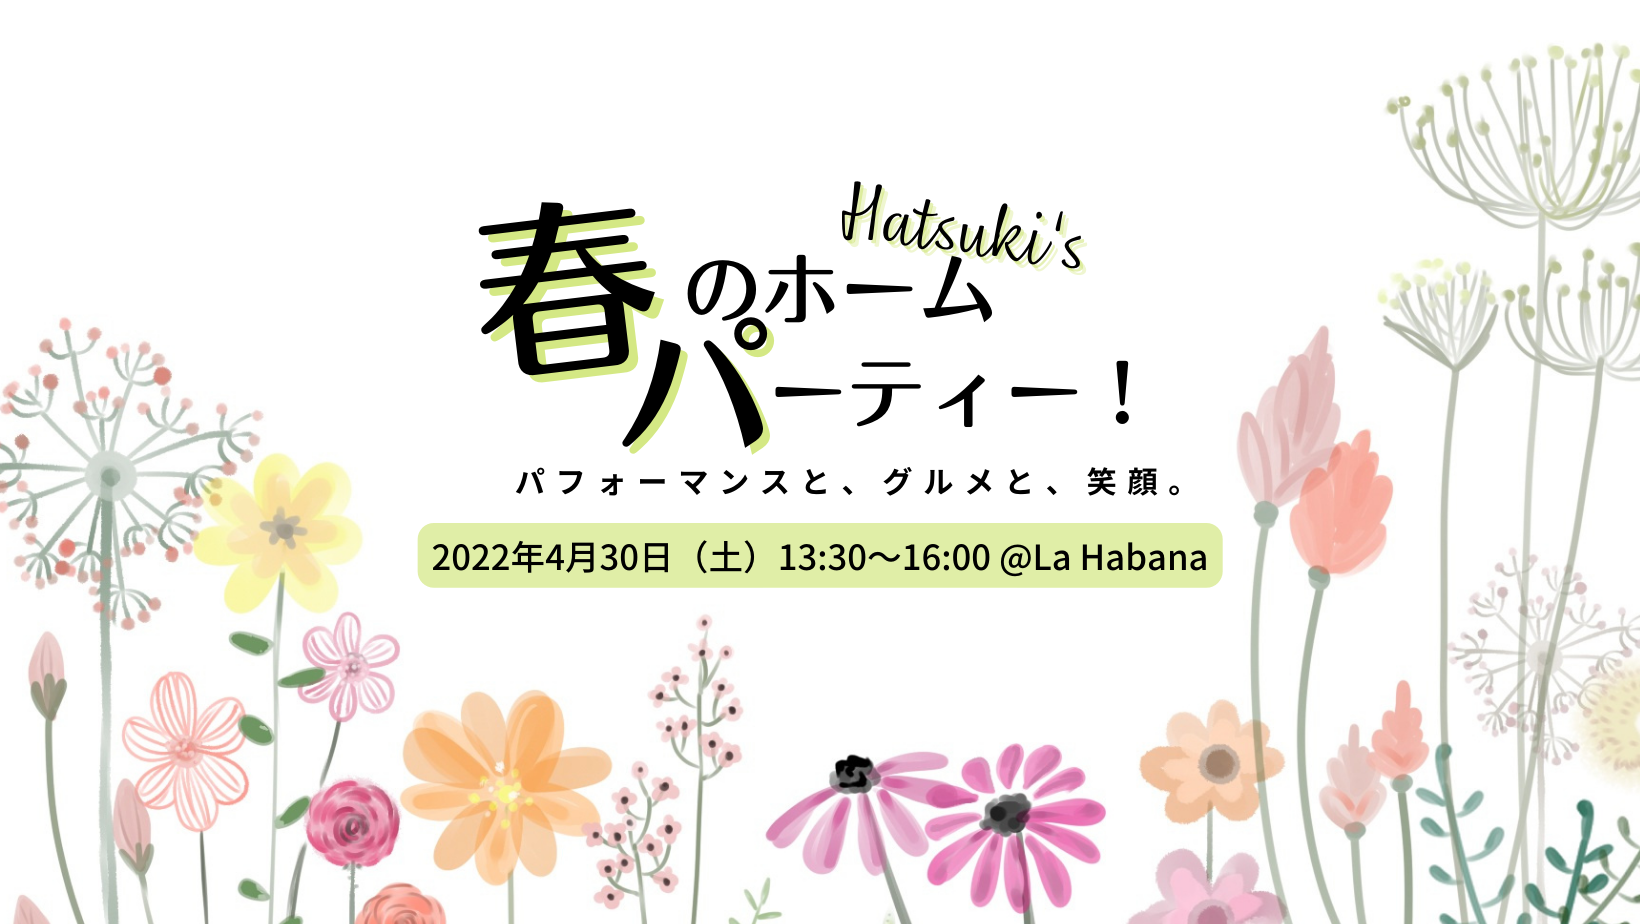 Hatsuki’s 春のホームパーティー #春パ2022